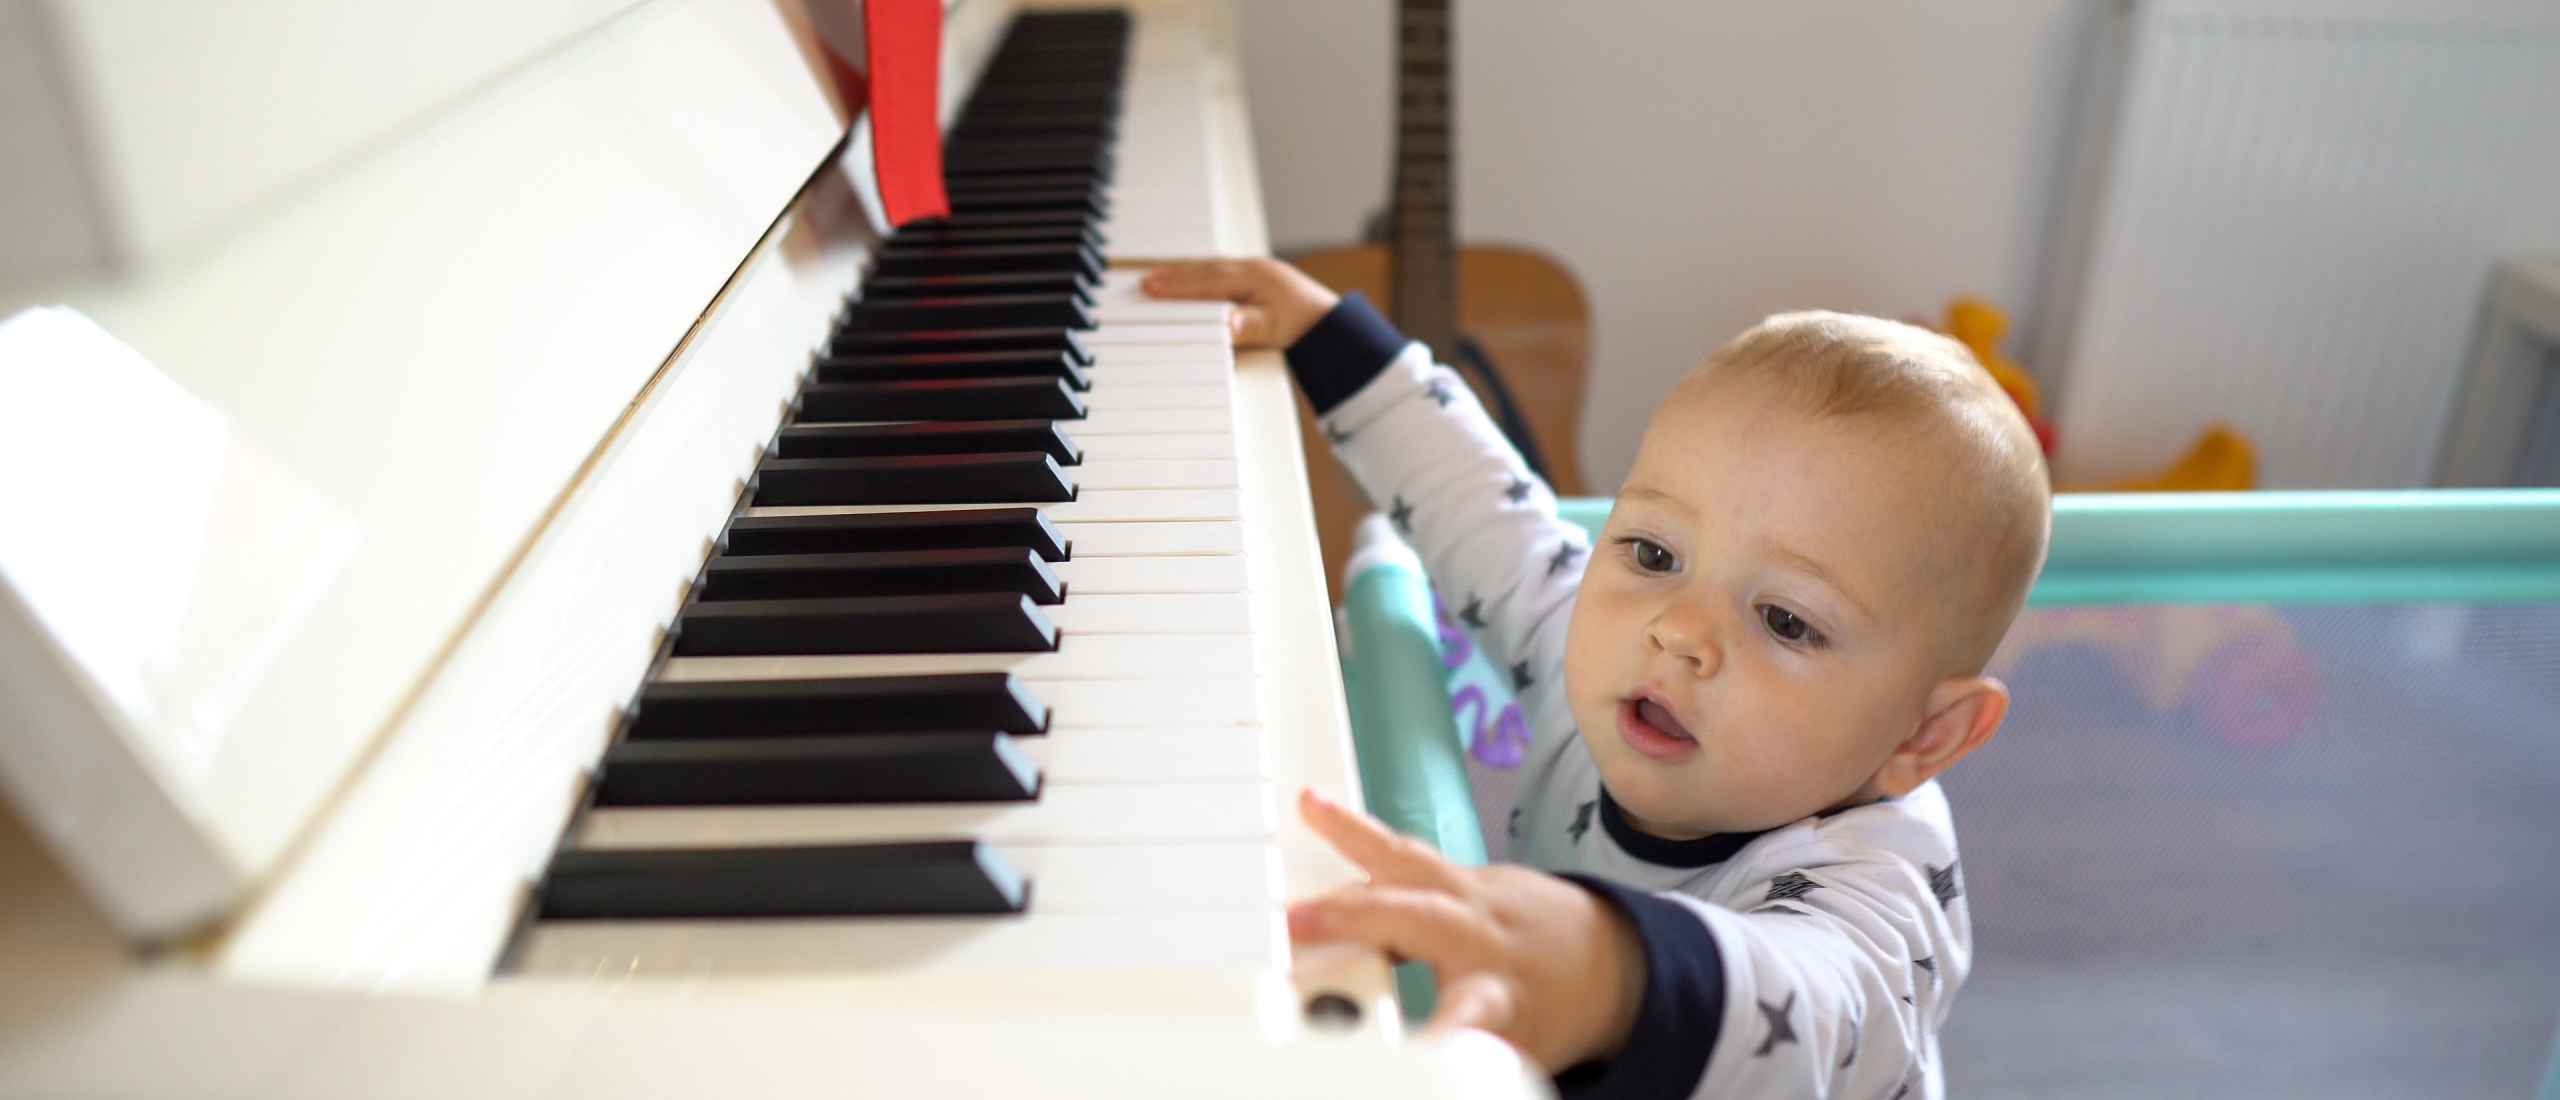 Is mijn kind oud genoeg voor pianoles?